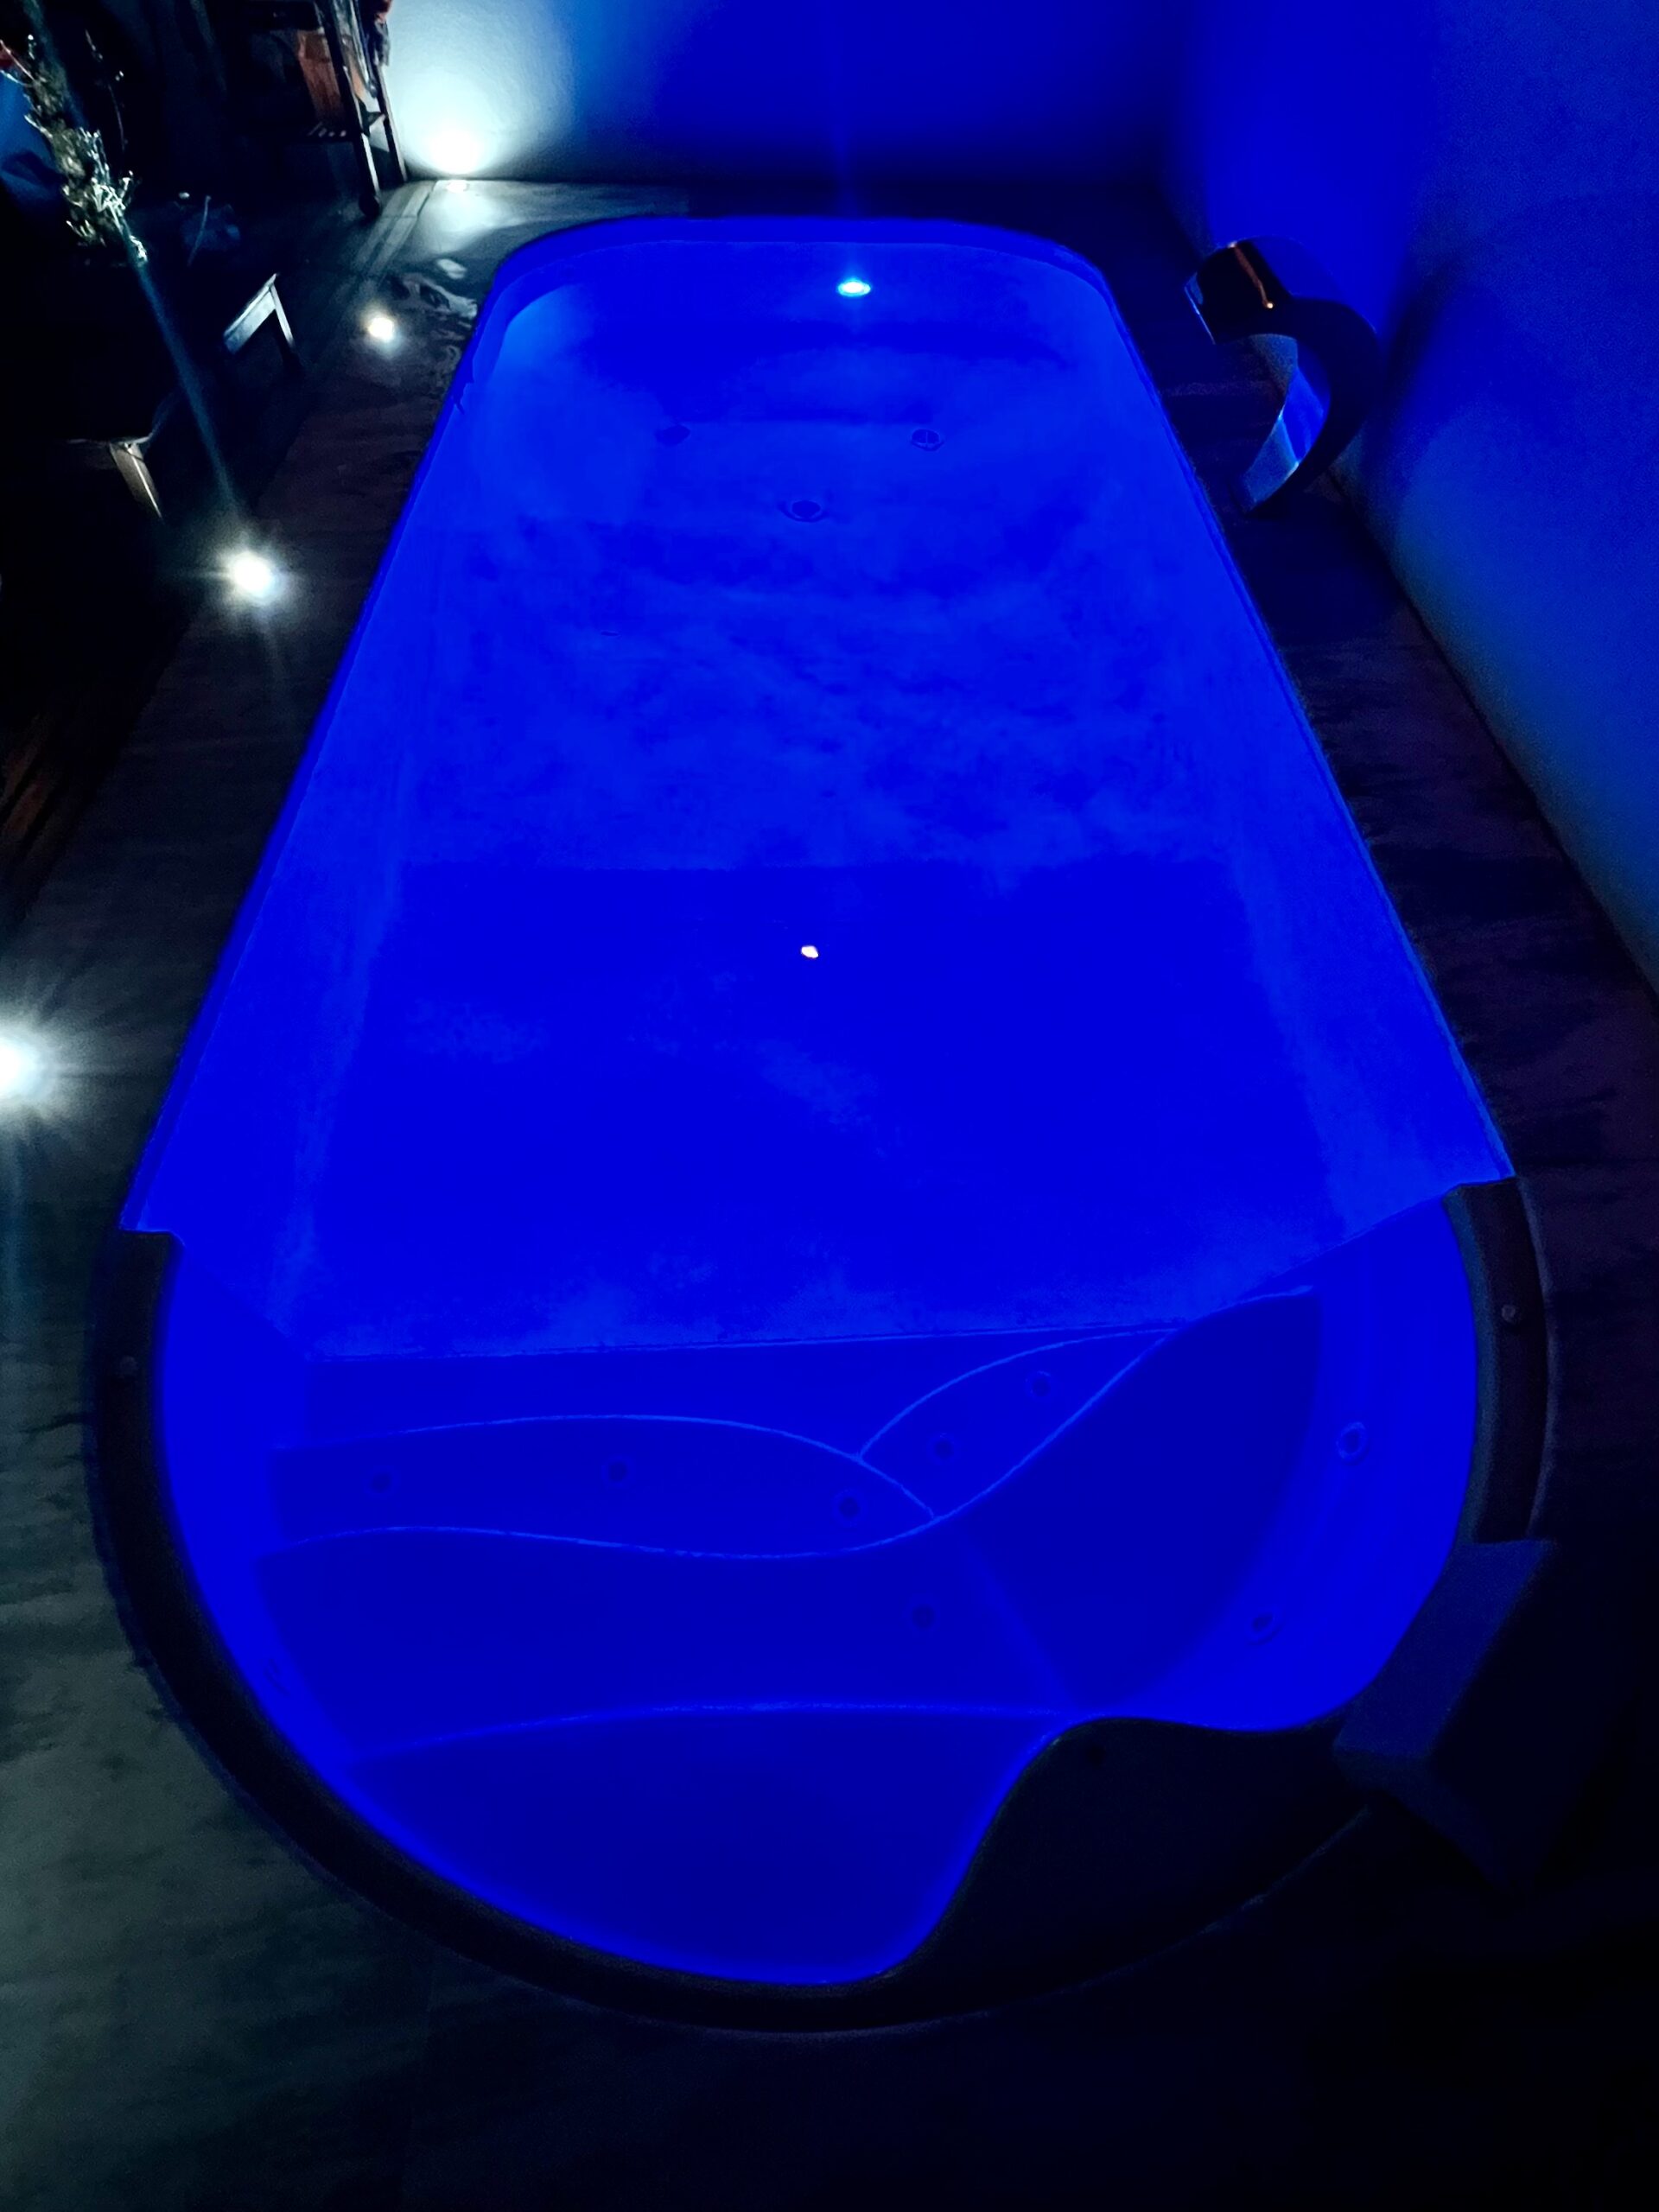 piscinas - ramos - equipamentos - iluminacao - led - rgb - dark blue - 1